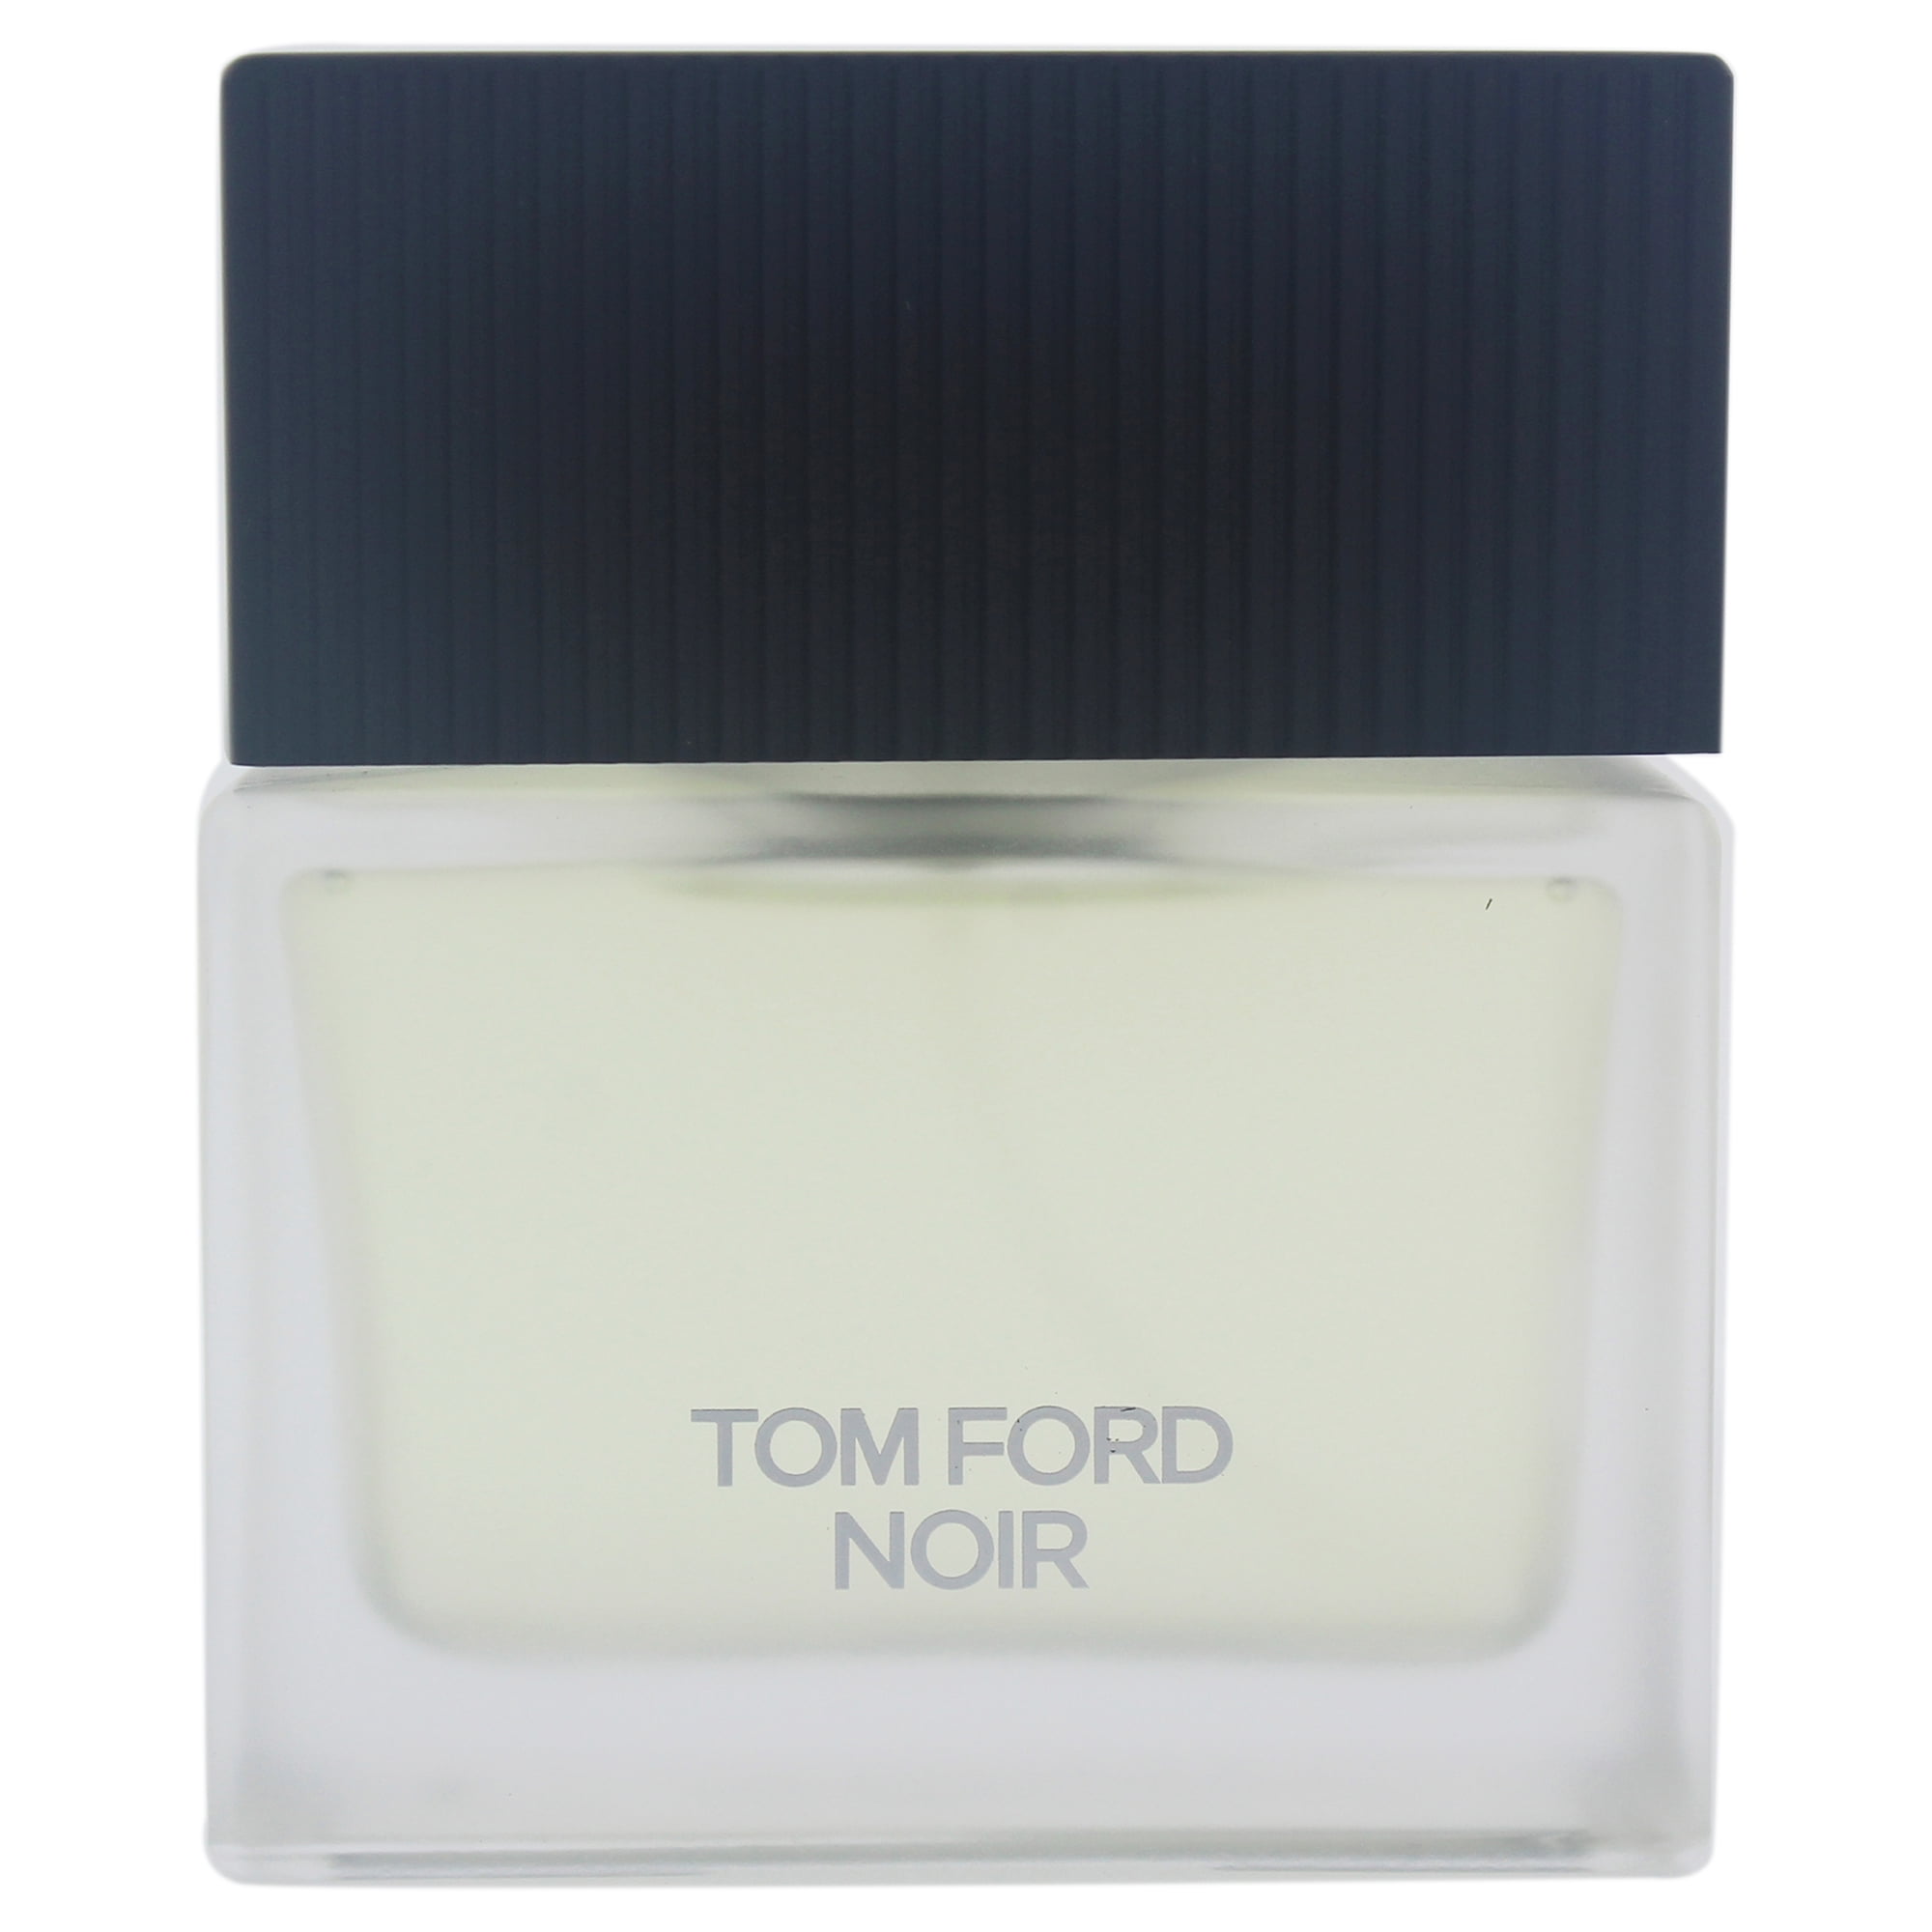 Tom Ford Noir Eau De Toilette, Cologne for Men, 1.7 Oz - Walmart.com